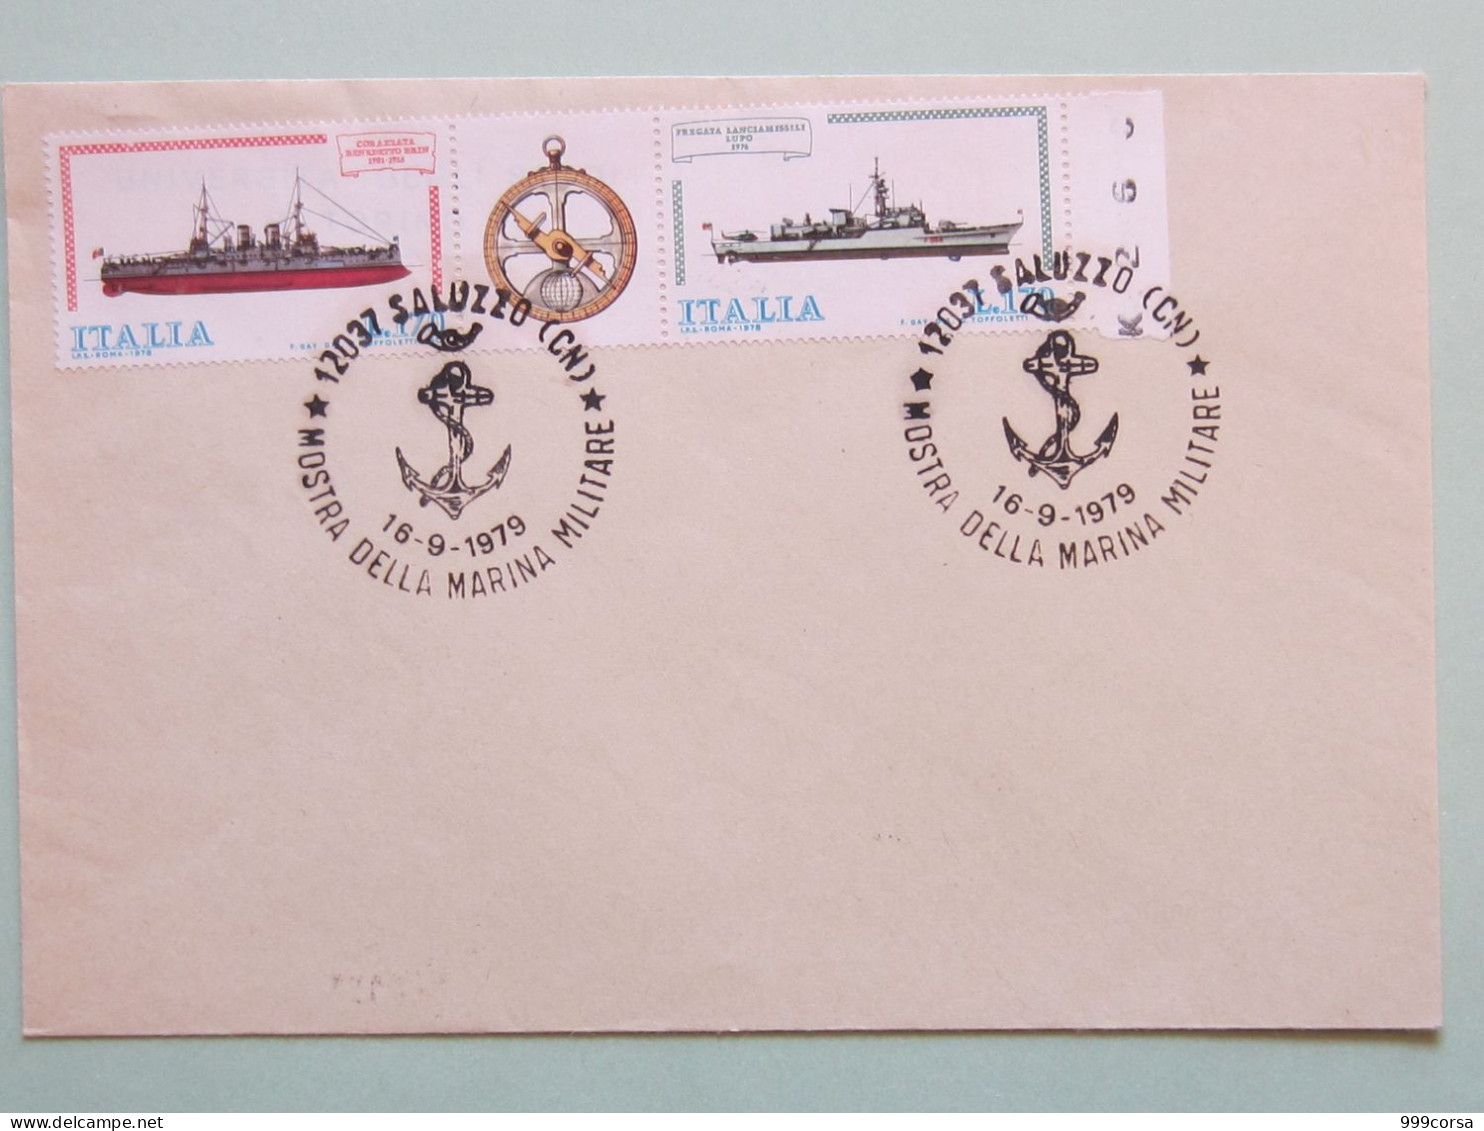 Militari, Annullo Speciale Mostra Marina Militare (àncora) Saluzzo 16-9-1979, Navi - 1971-80: Storia Postale